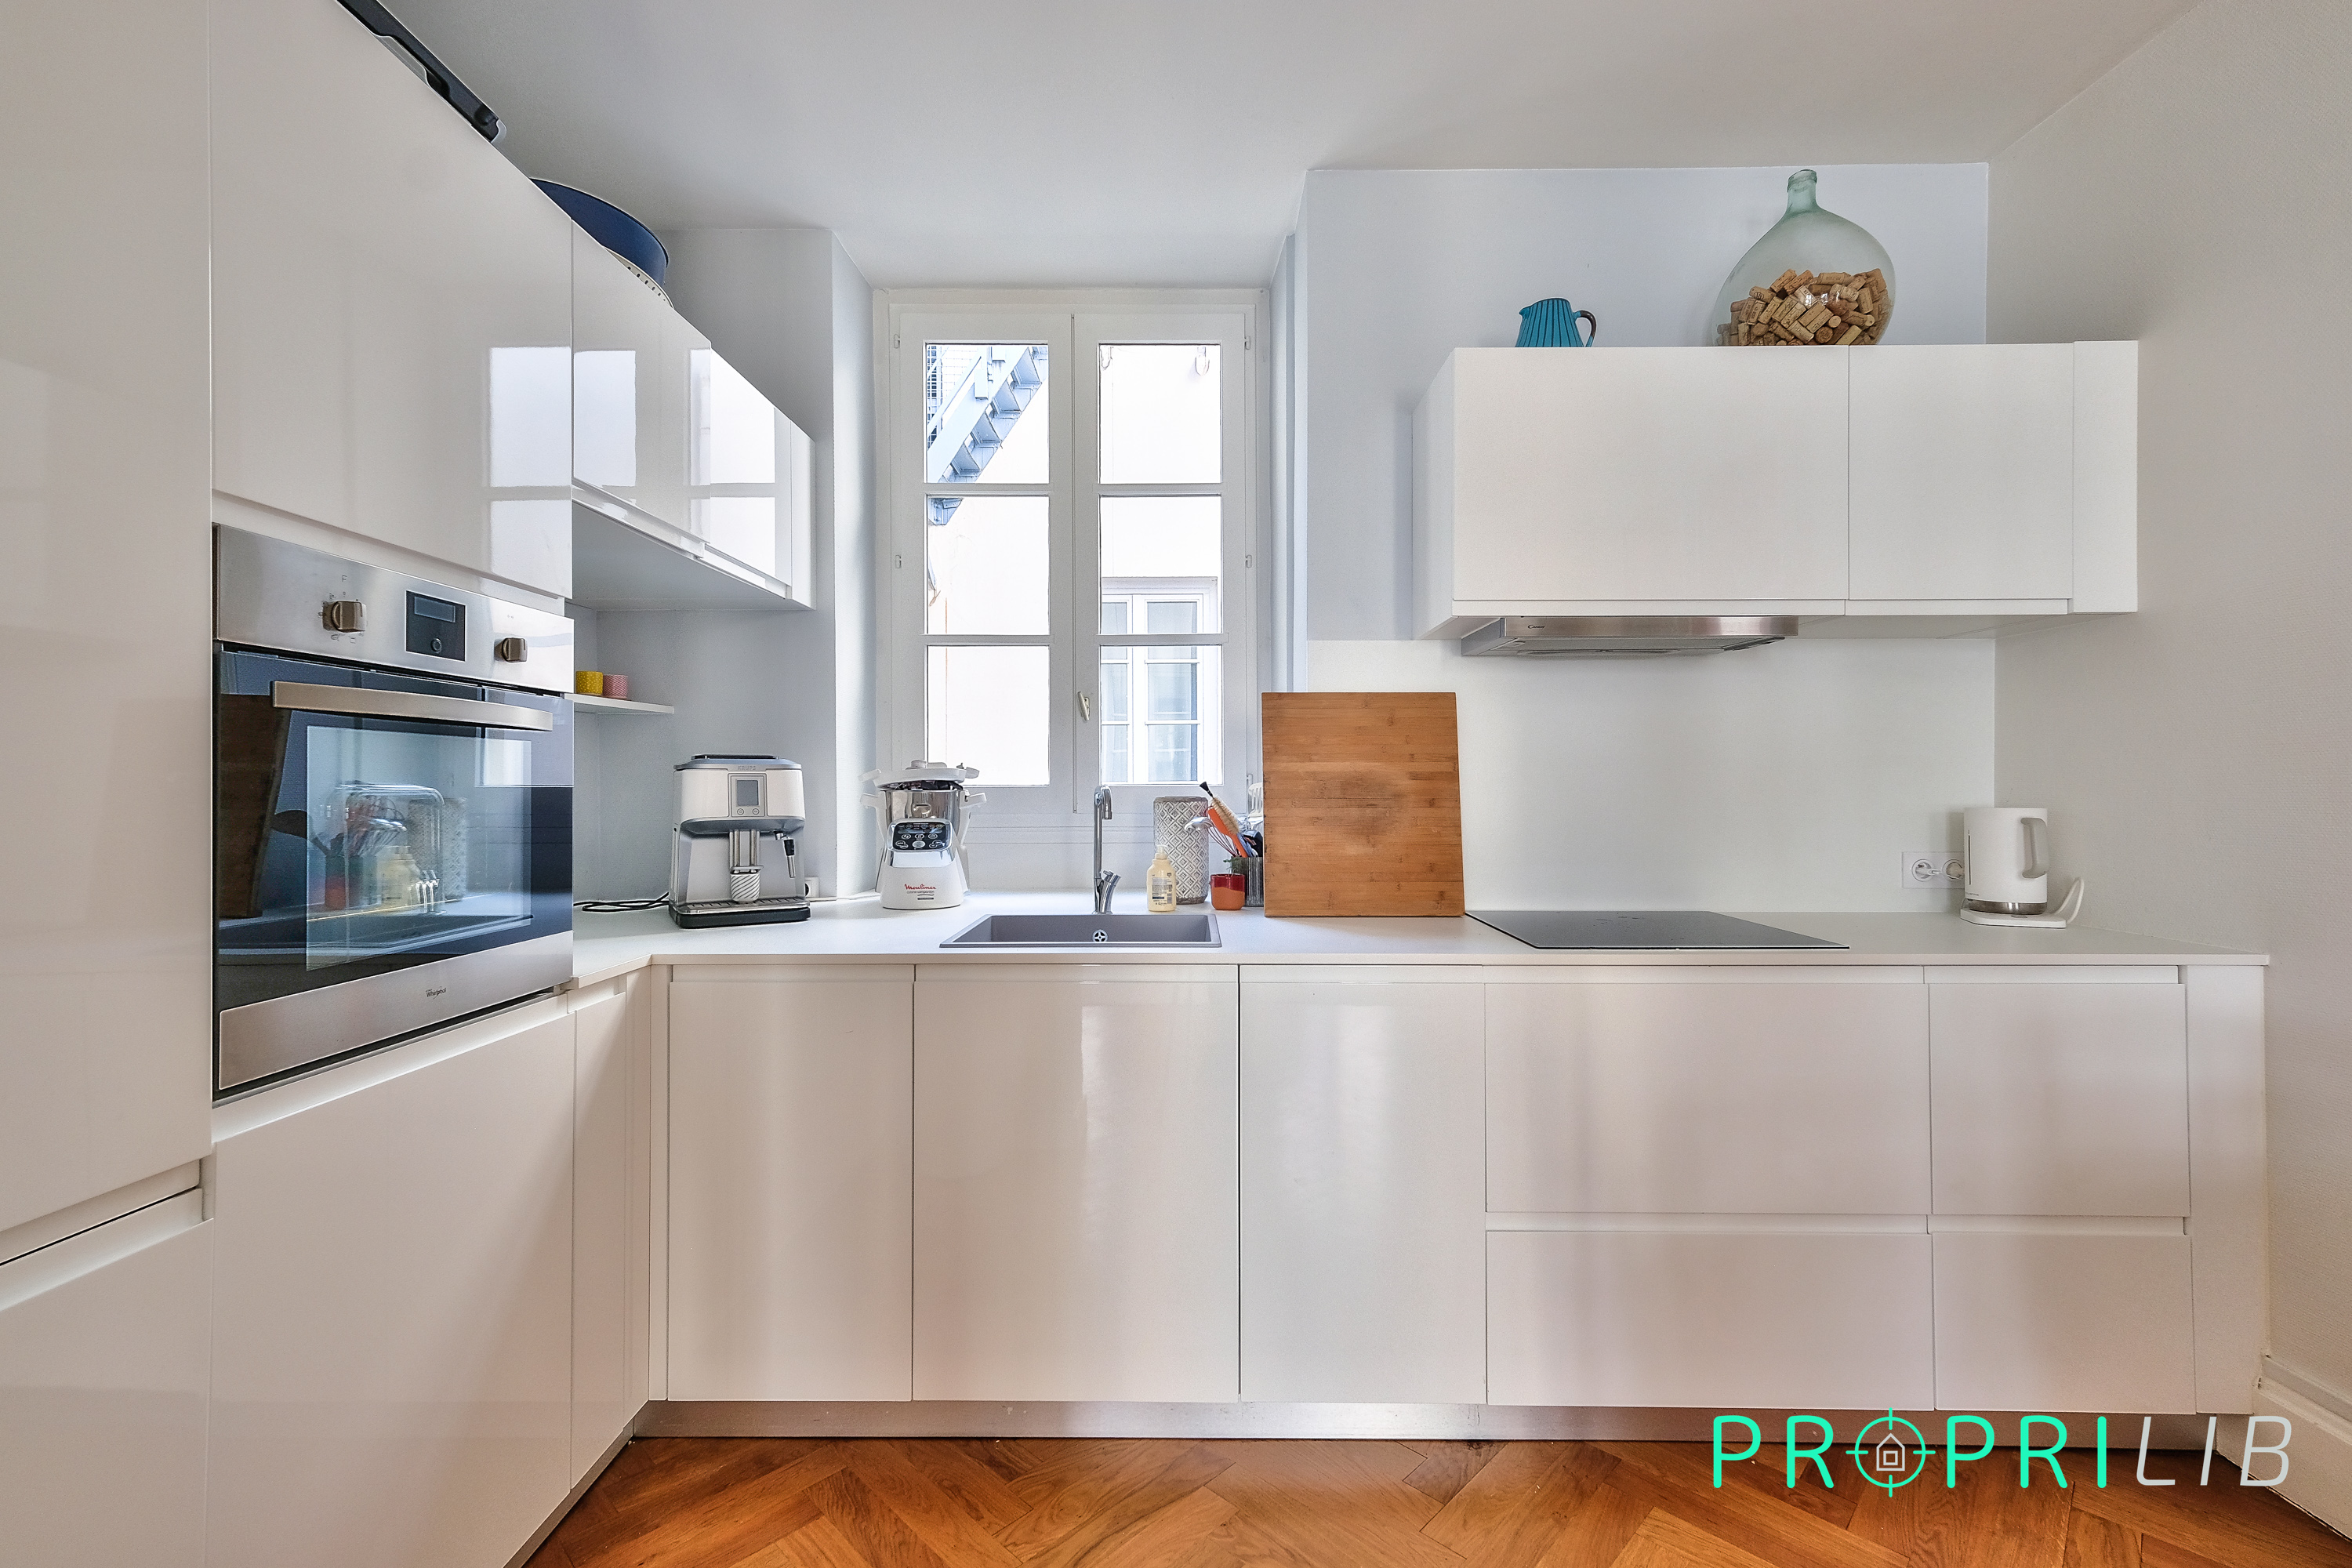 PropriLib l’agence immobilière en ligne au forfait vend cet appartement à Lyon 3ème